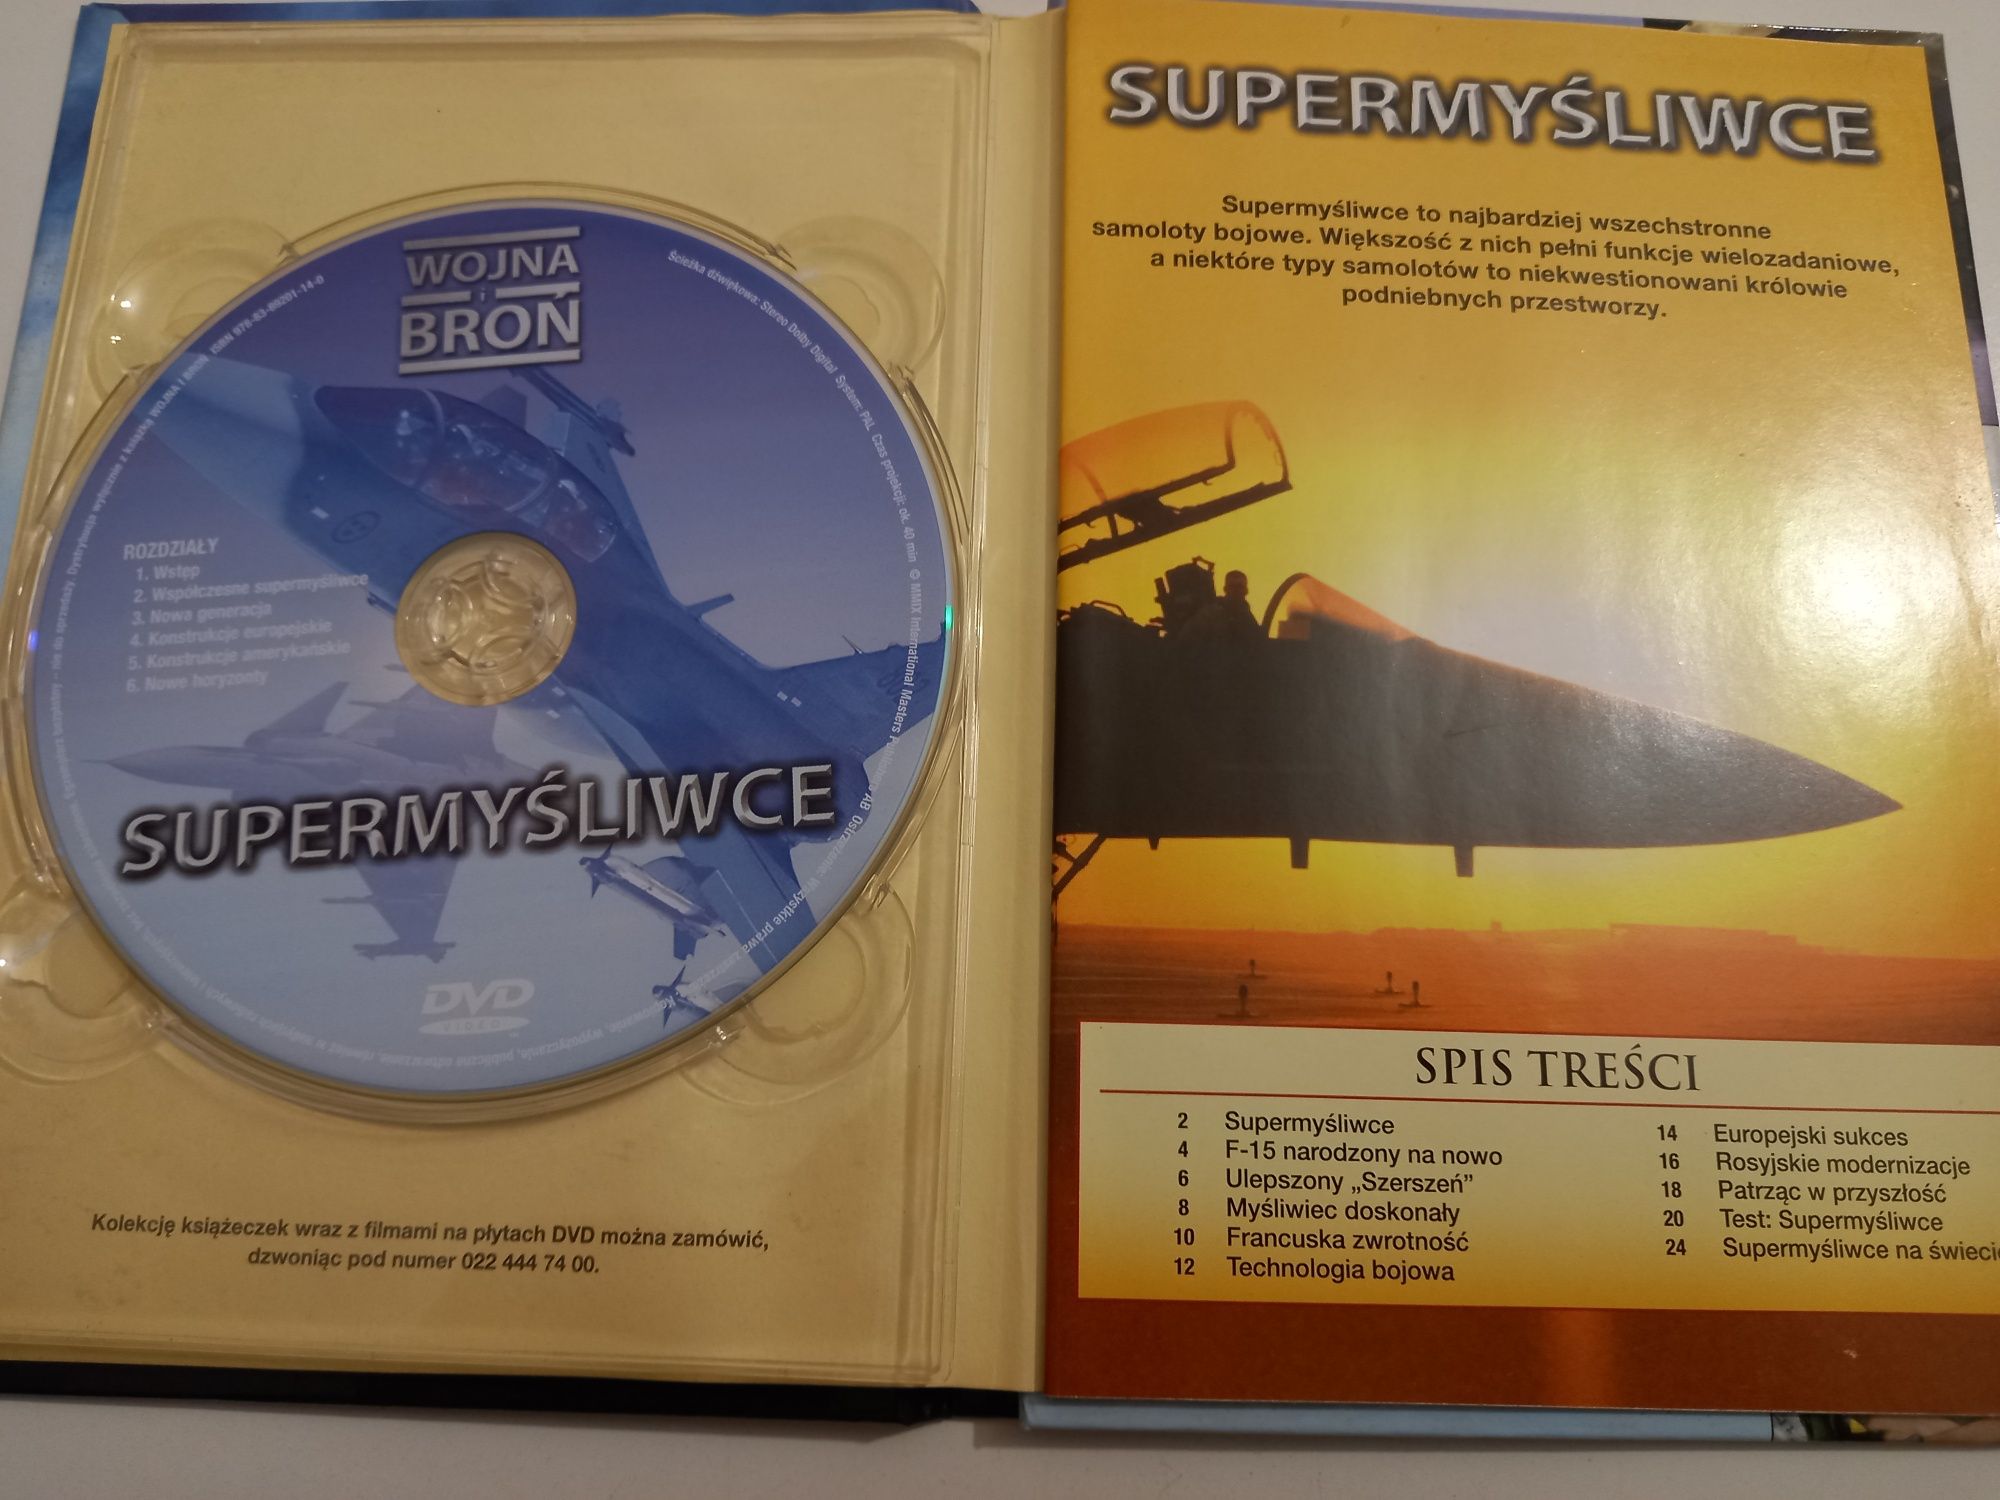 Wojna i Broń Supermyśliwce DVD Video